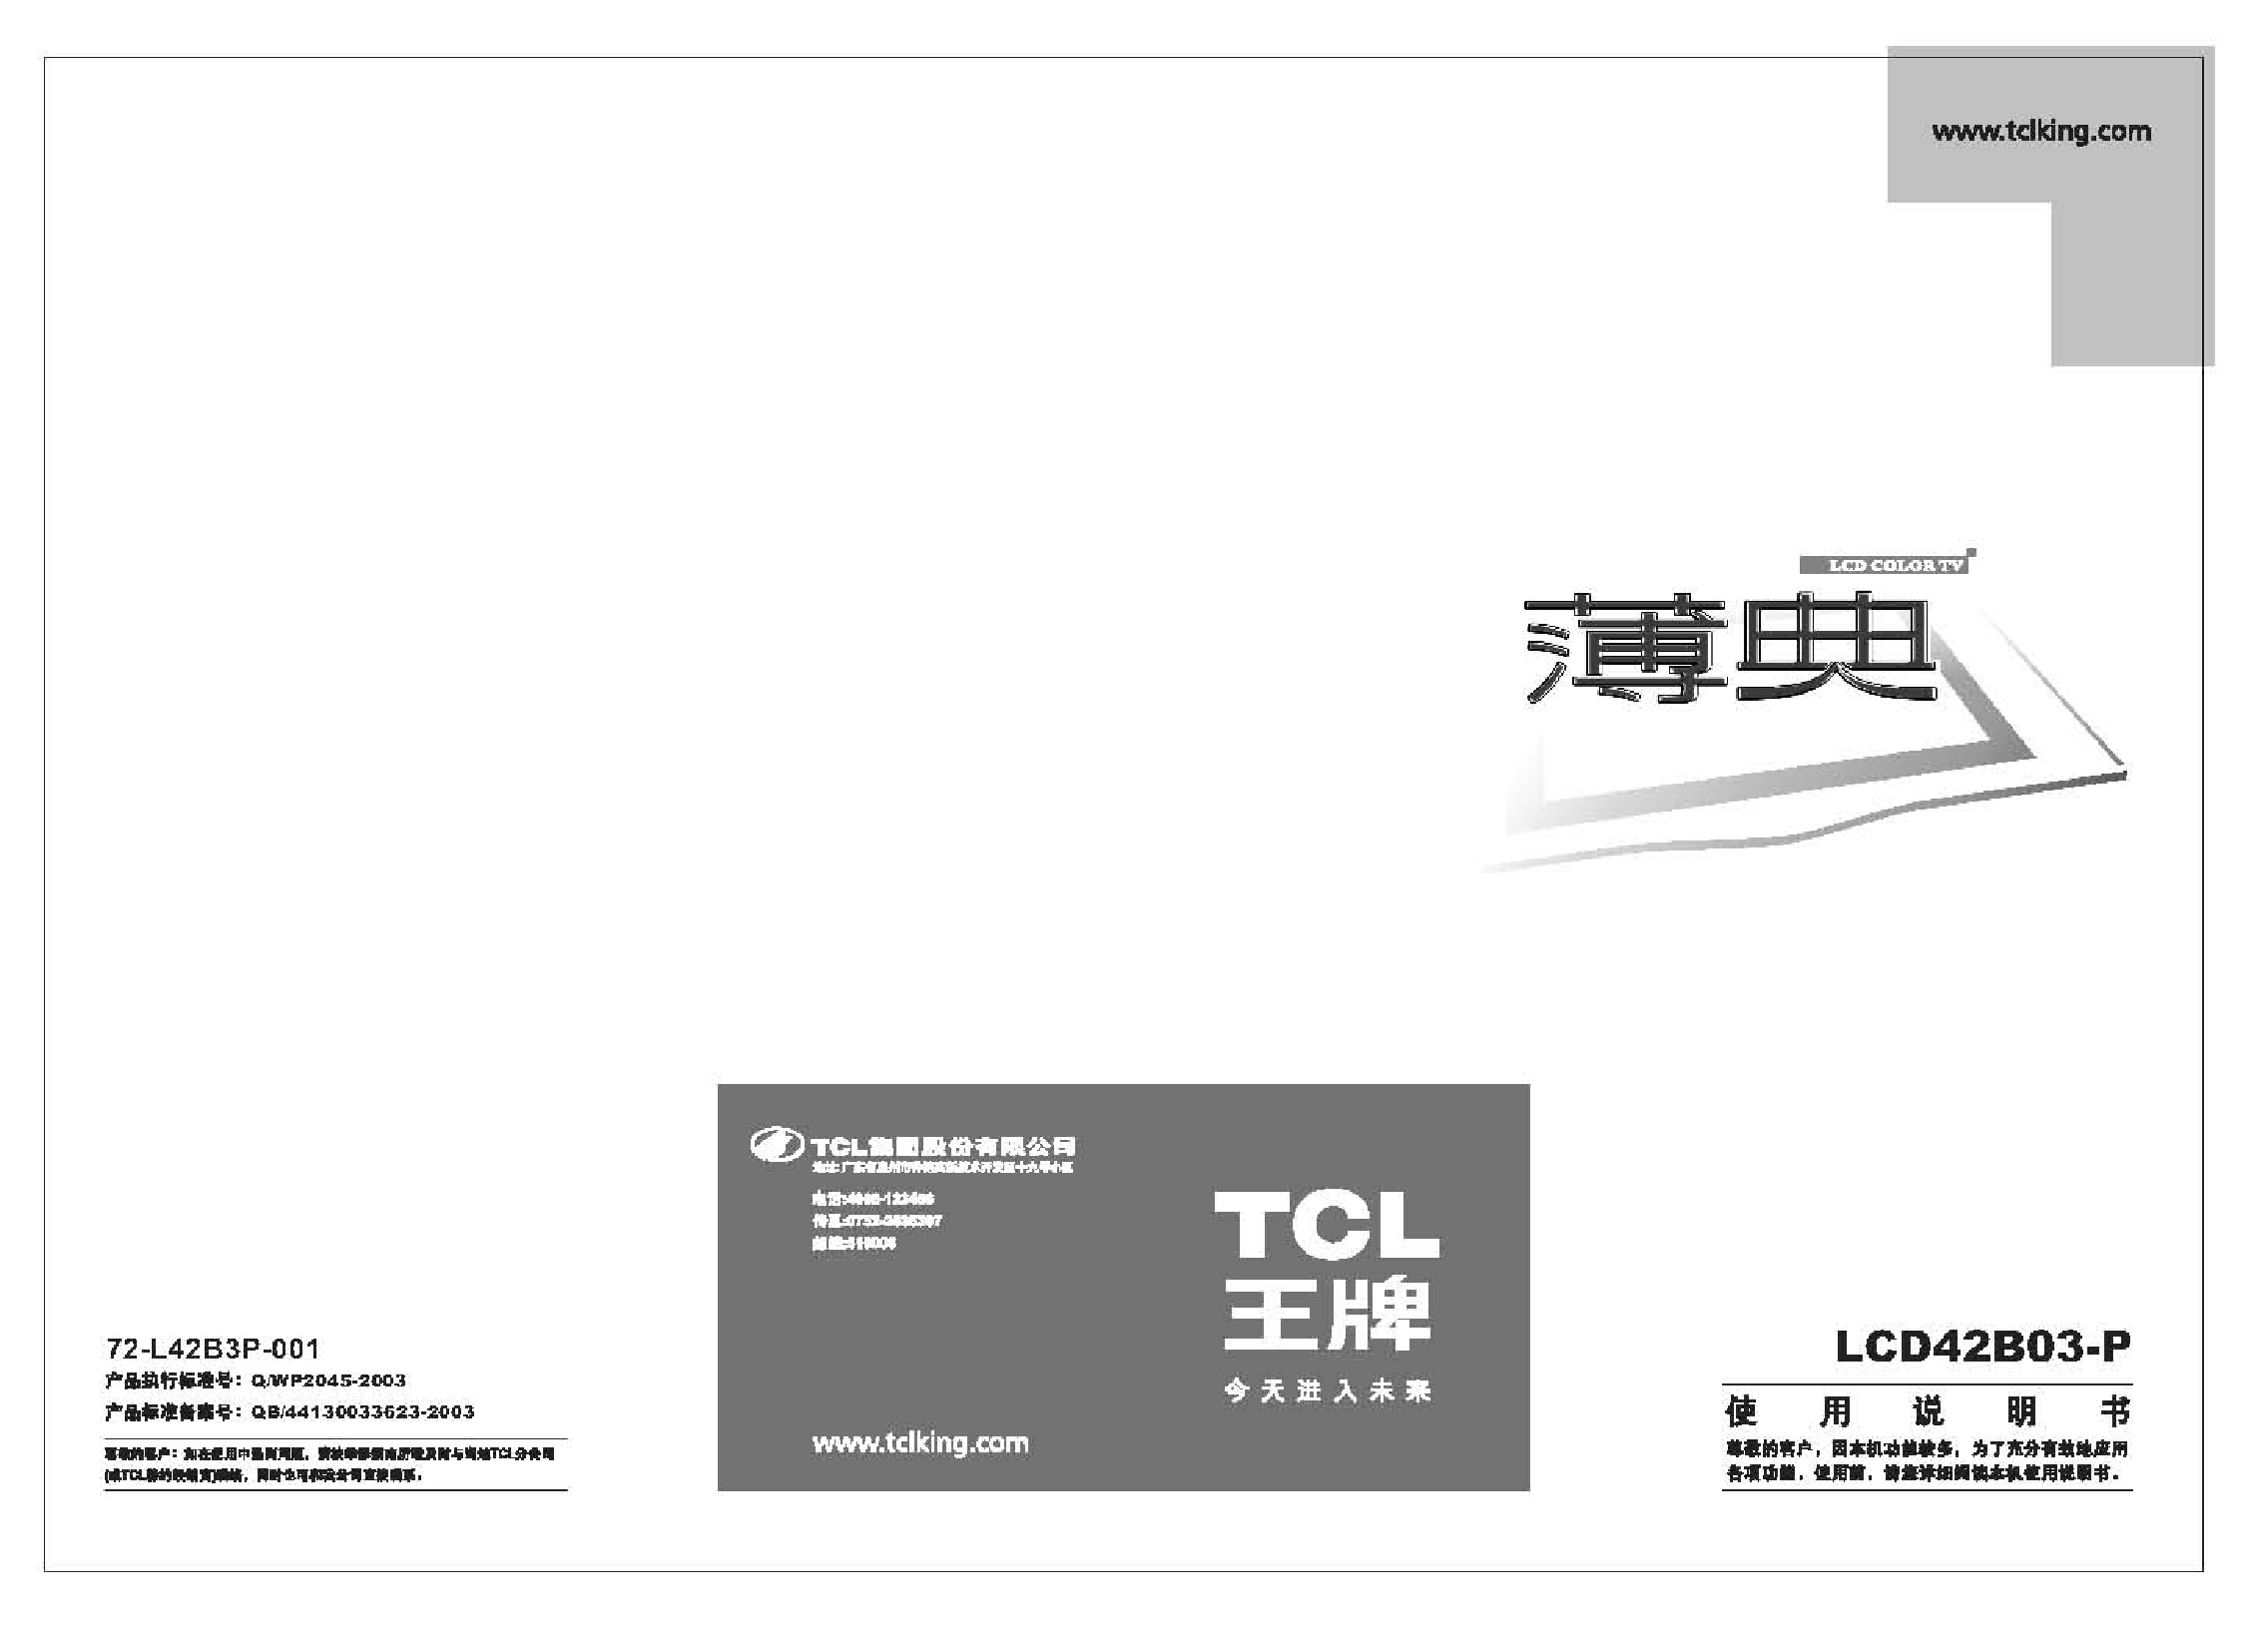 TCL LCD42B03-P 使用说明书 封面